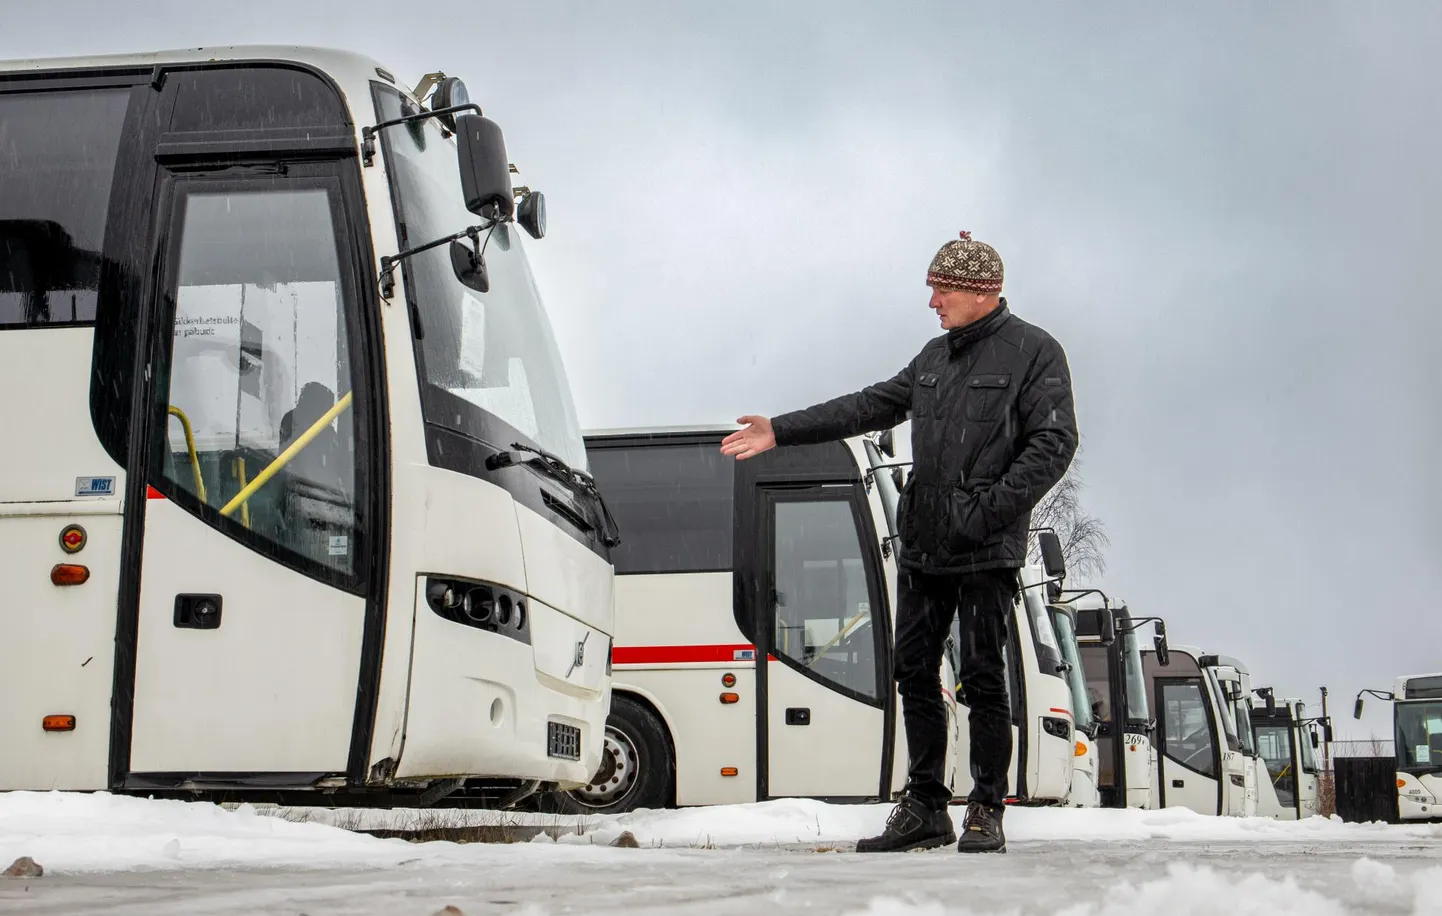 Раймонд Пярн, предприниматель, работающий в Сауга, призывает собрать пожертвования на отправку 15 автобусов для украинской армии.